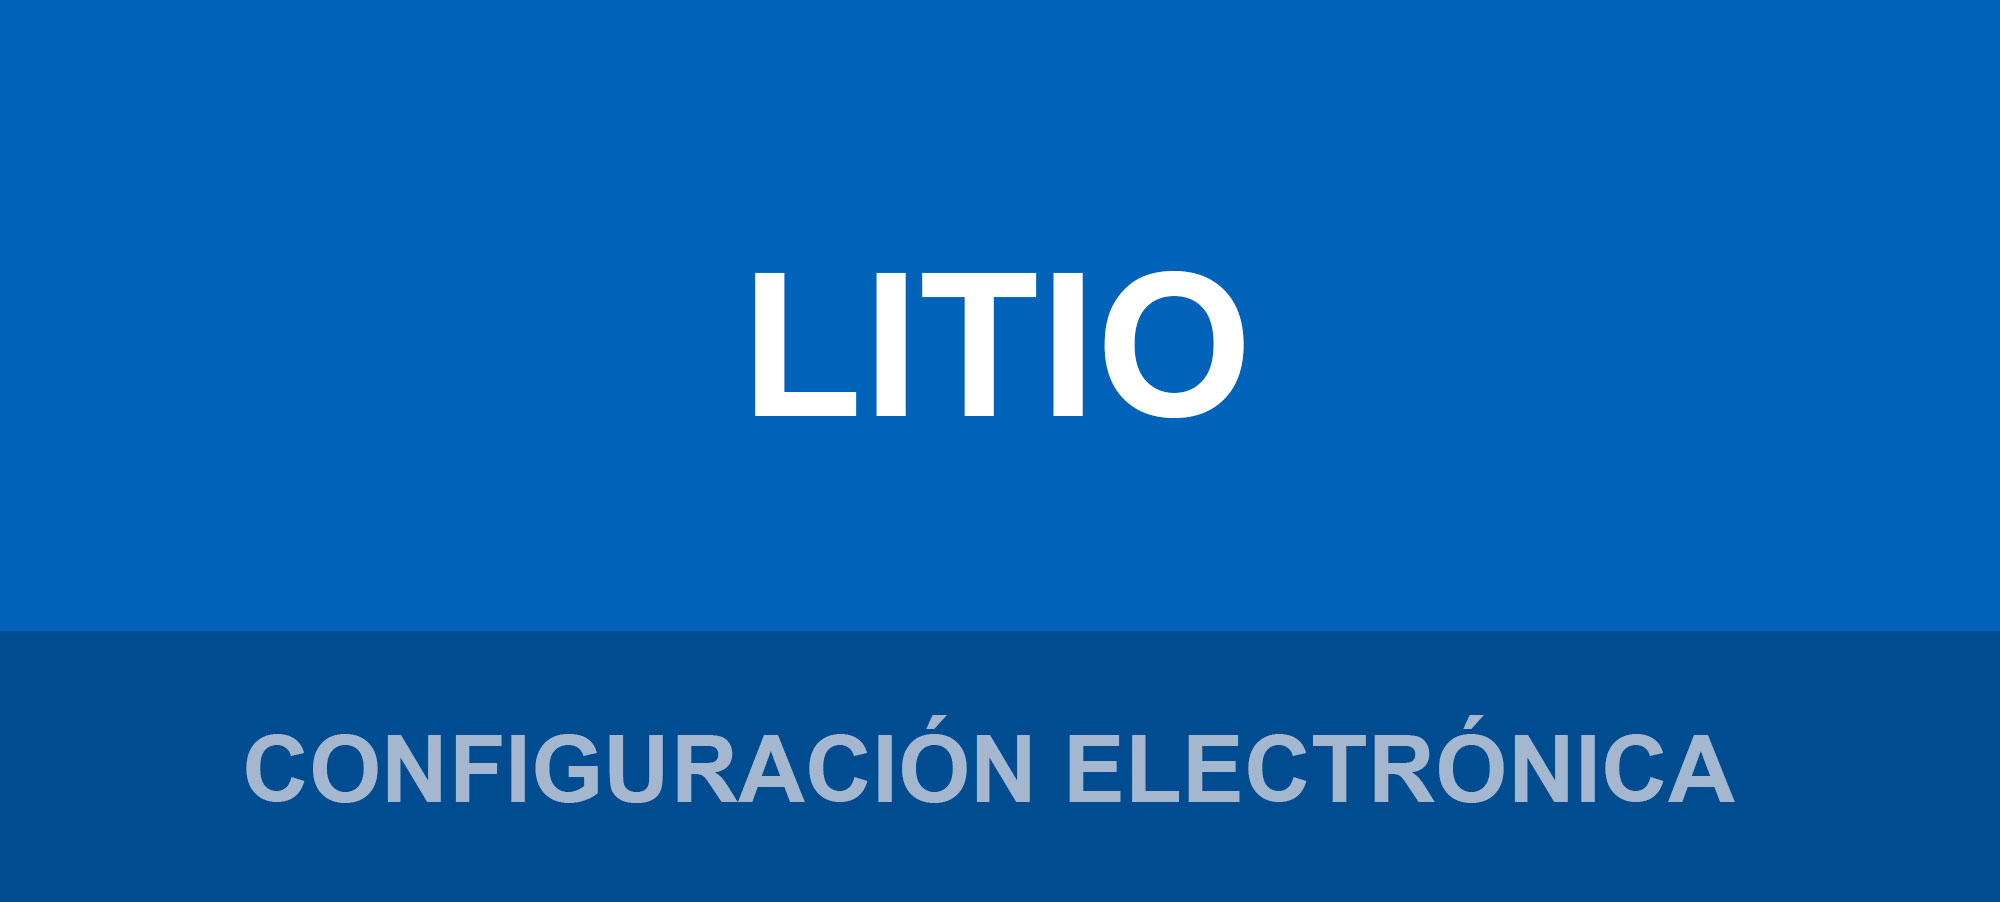 Configuración electrónica Elemento Litio